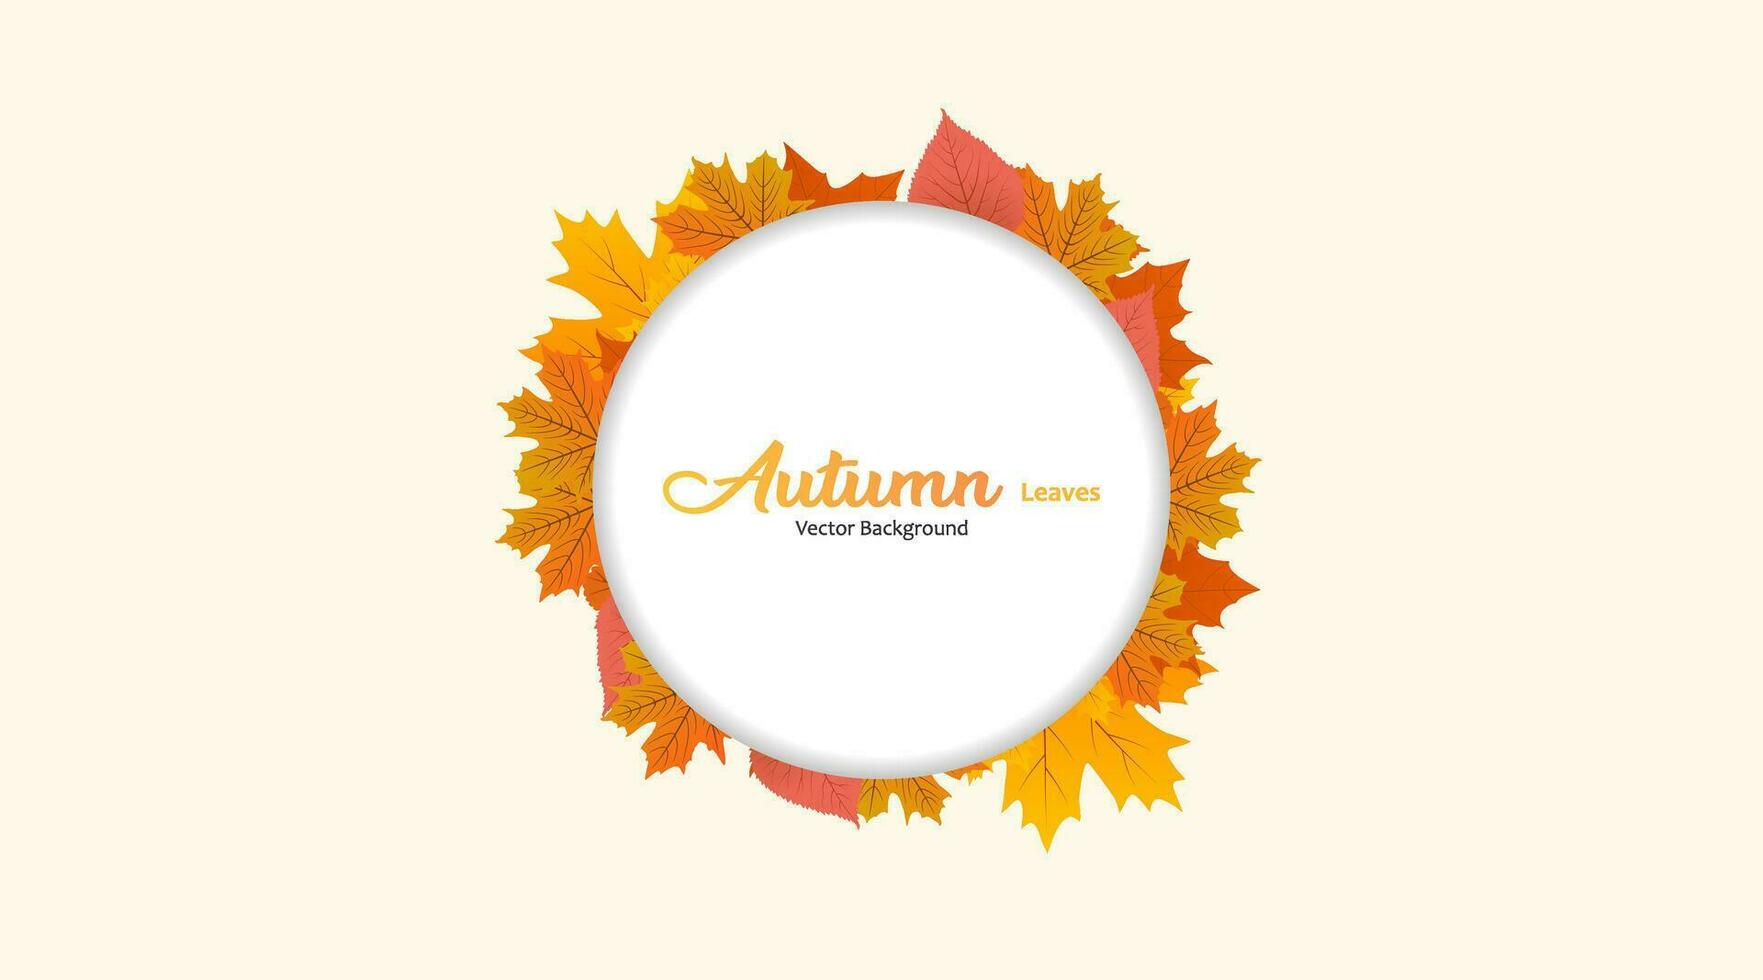 Vektorhintergrund mit roten, orangen, braunen und gelben fallenden Herbstblättern vektor